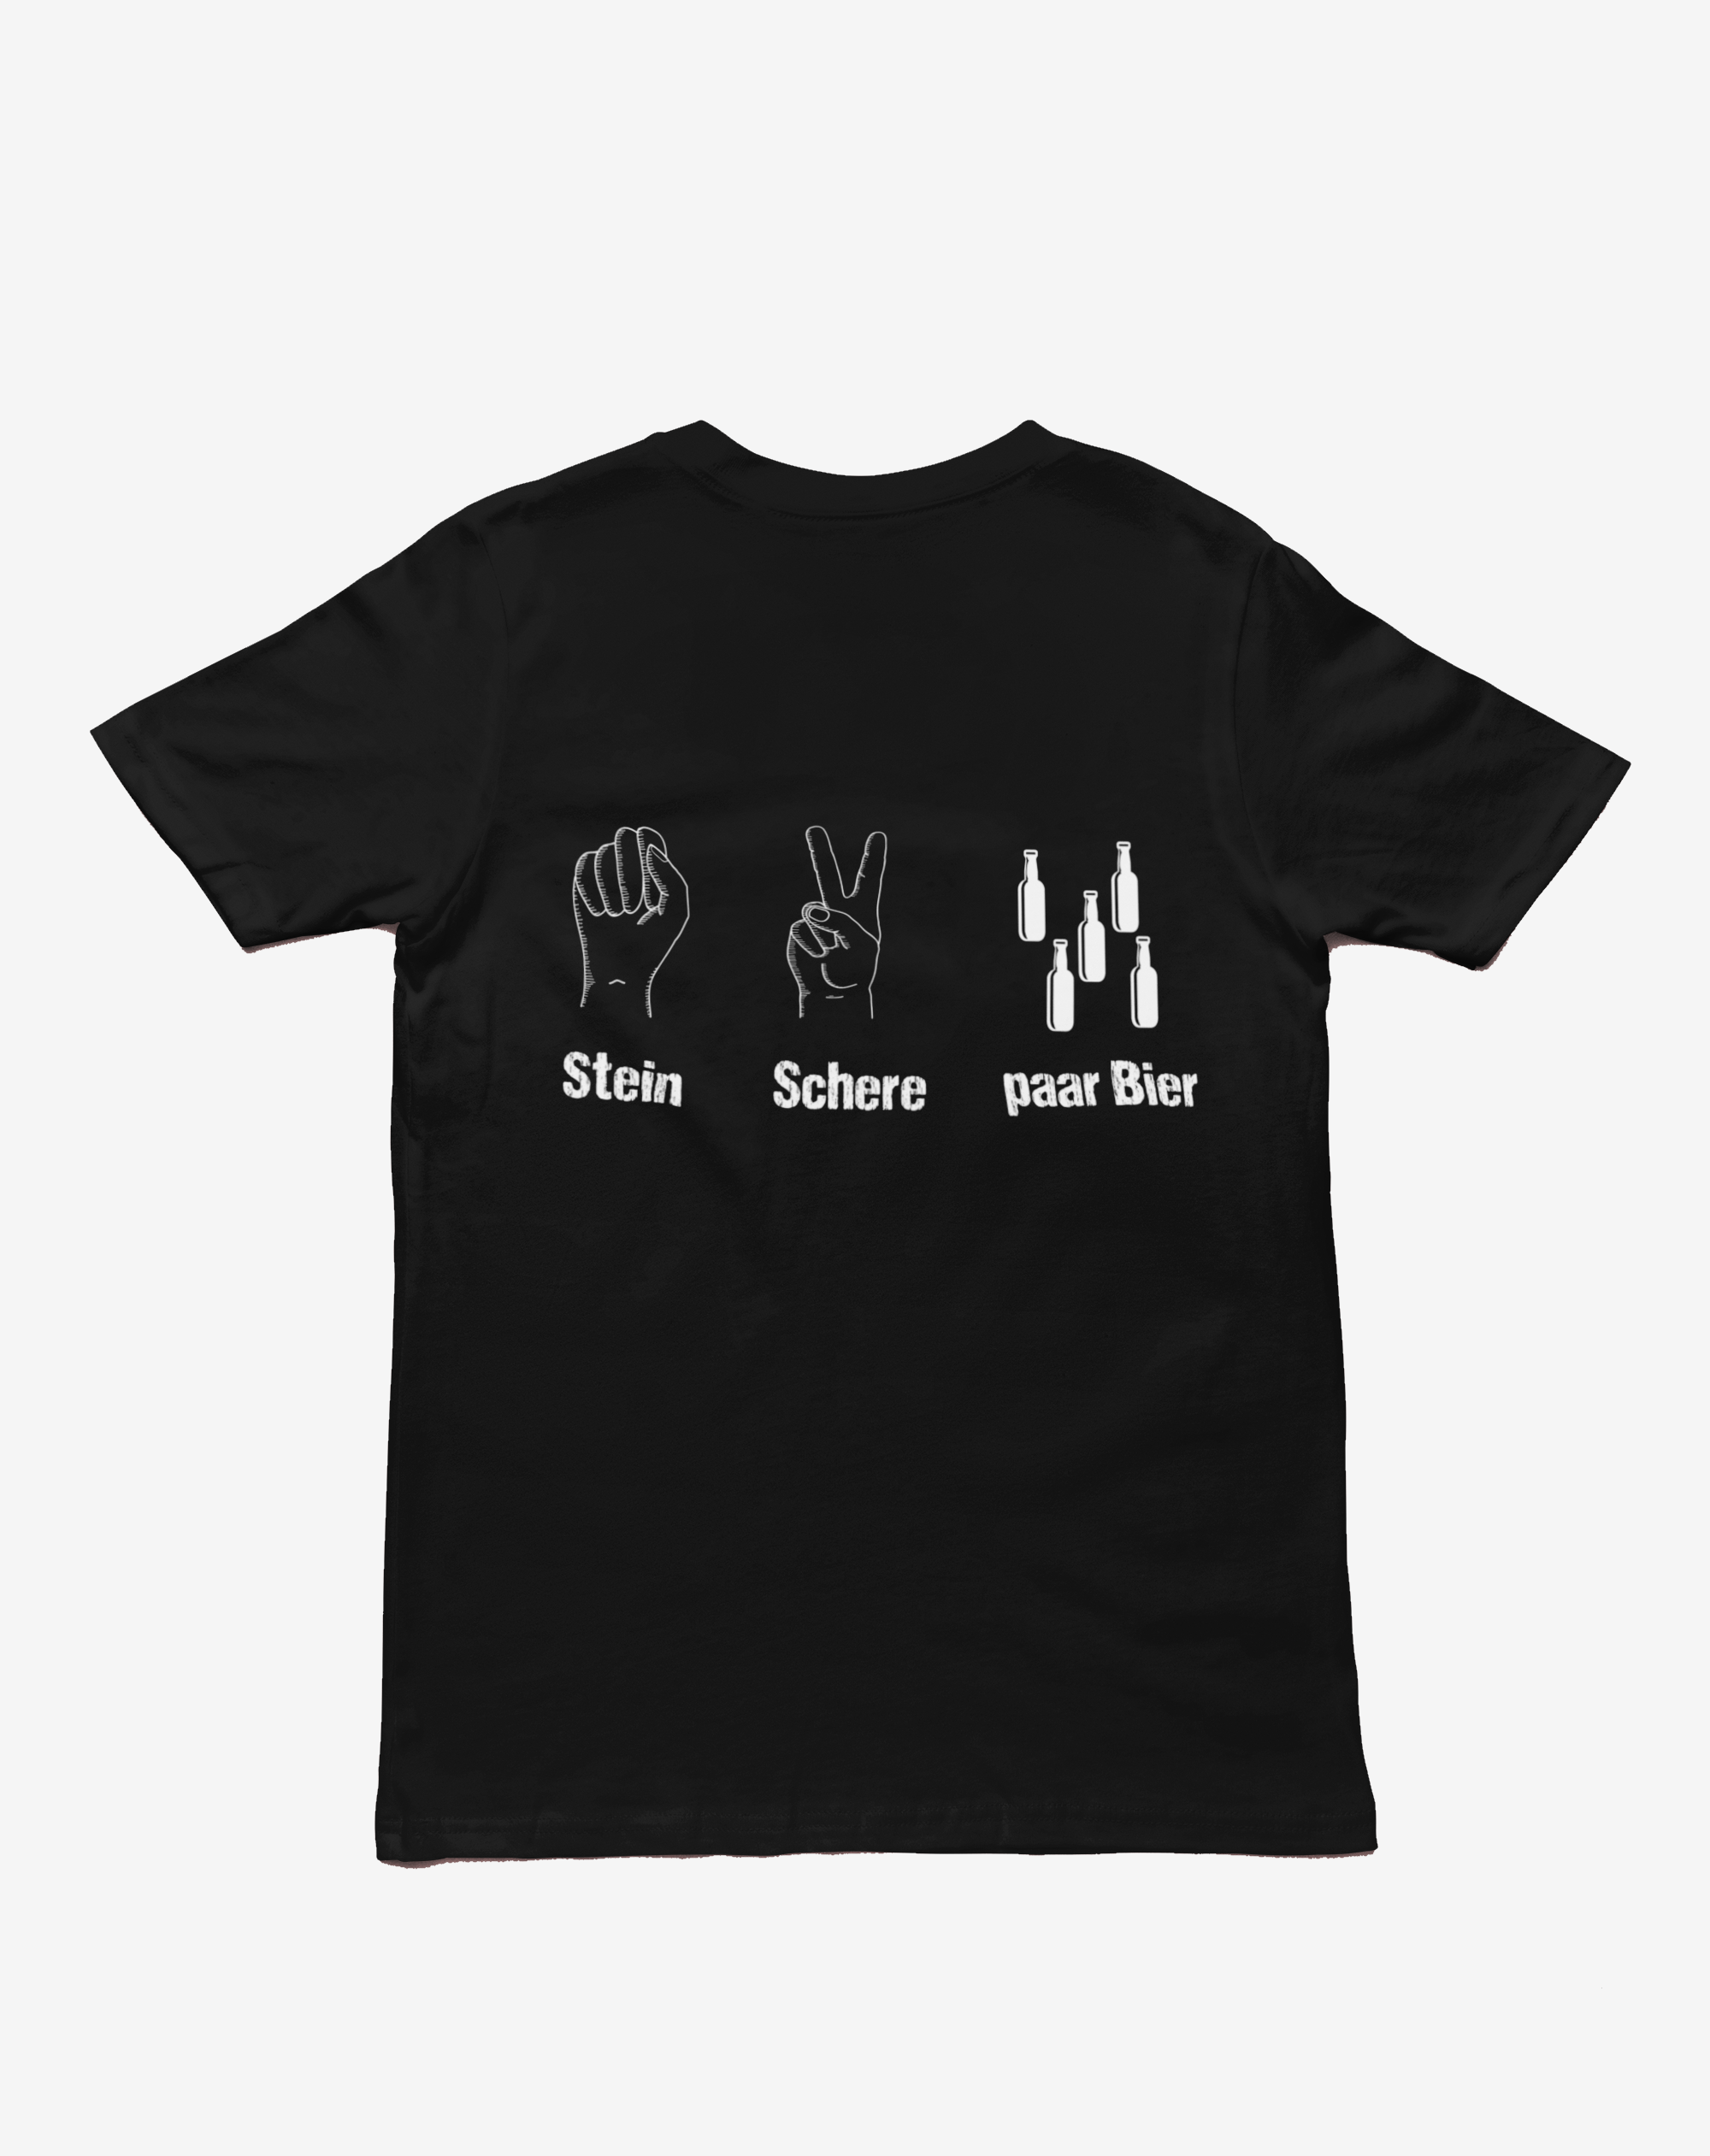 "Stein Schere paar Bier" T-Shirt